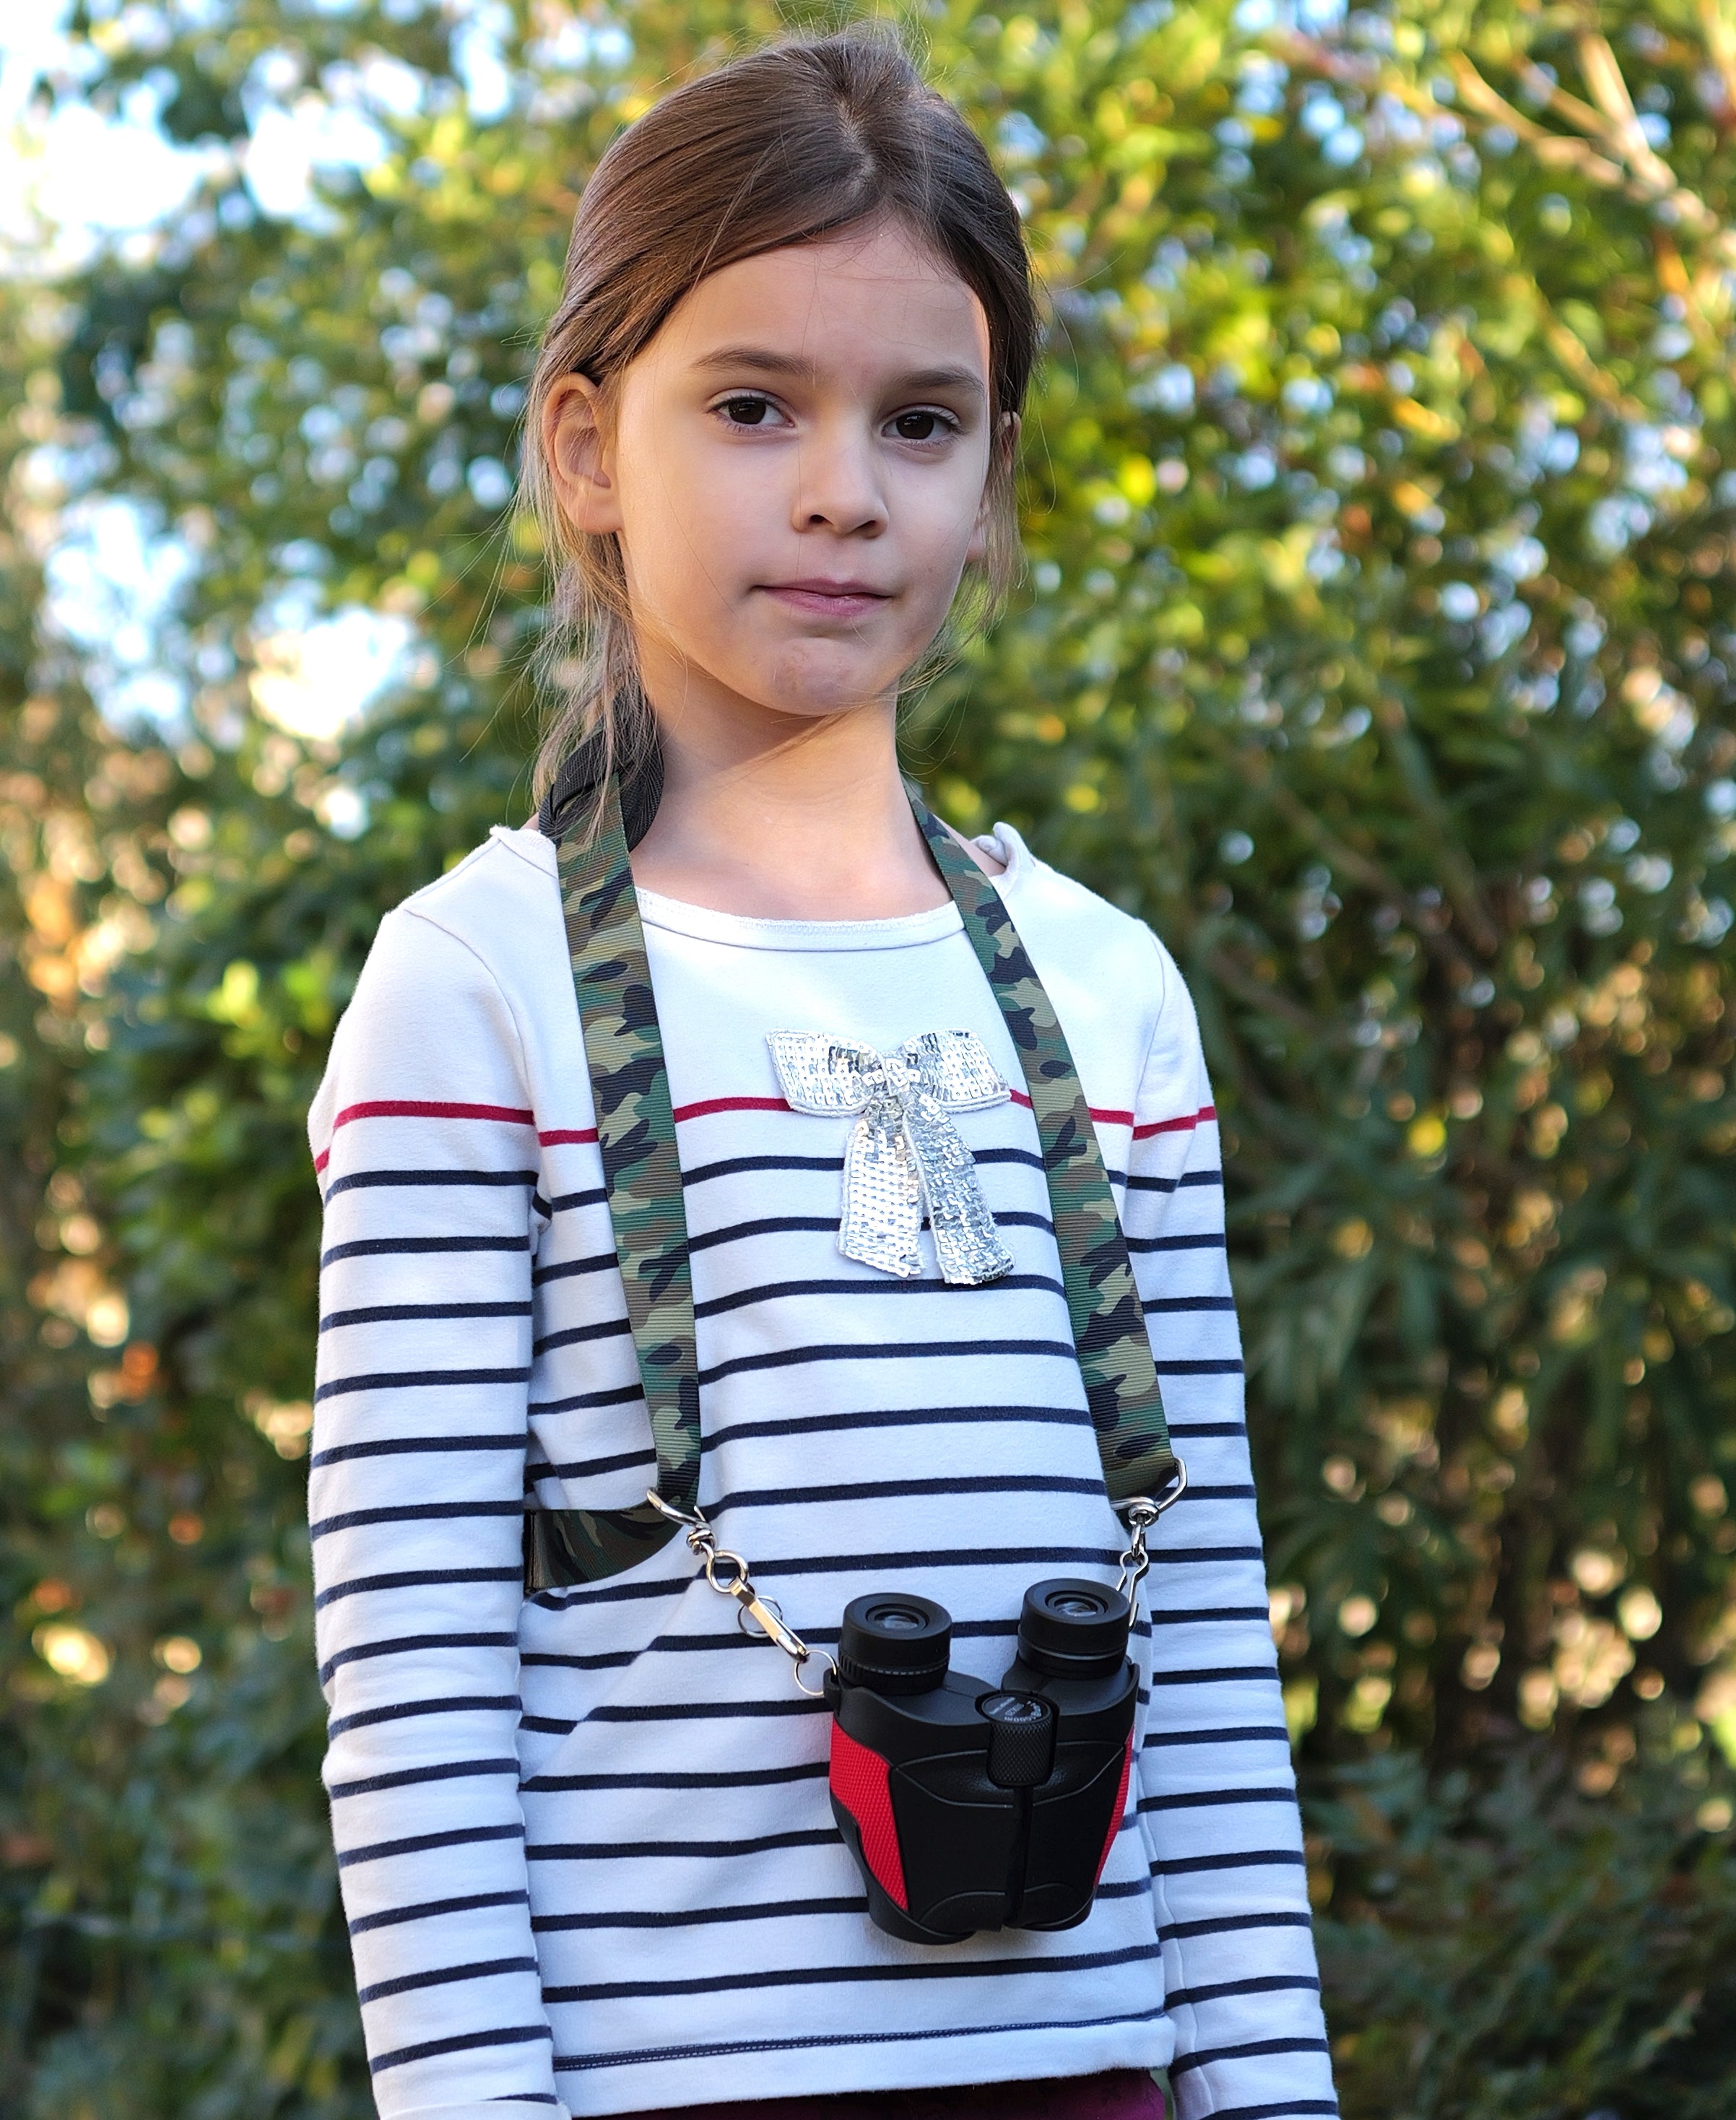 Camstrap Nature Explorer - Handsfree verrekijker van hoge kwaliteit met riem voor kinderen